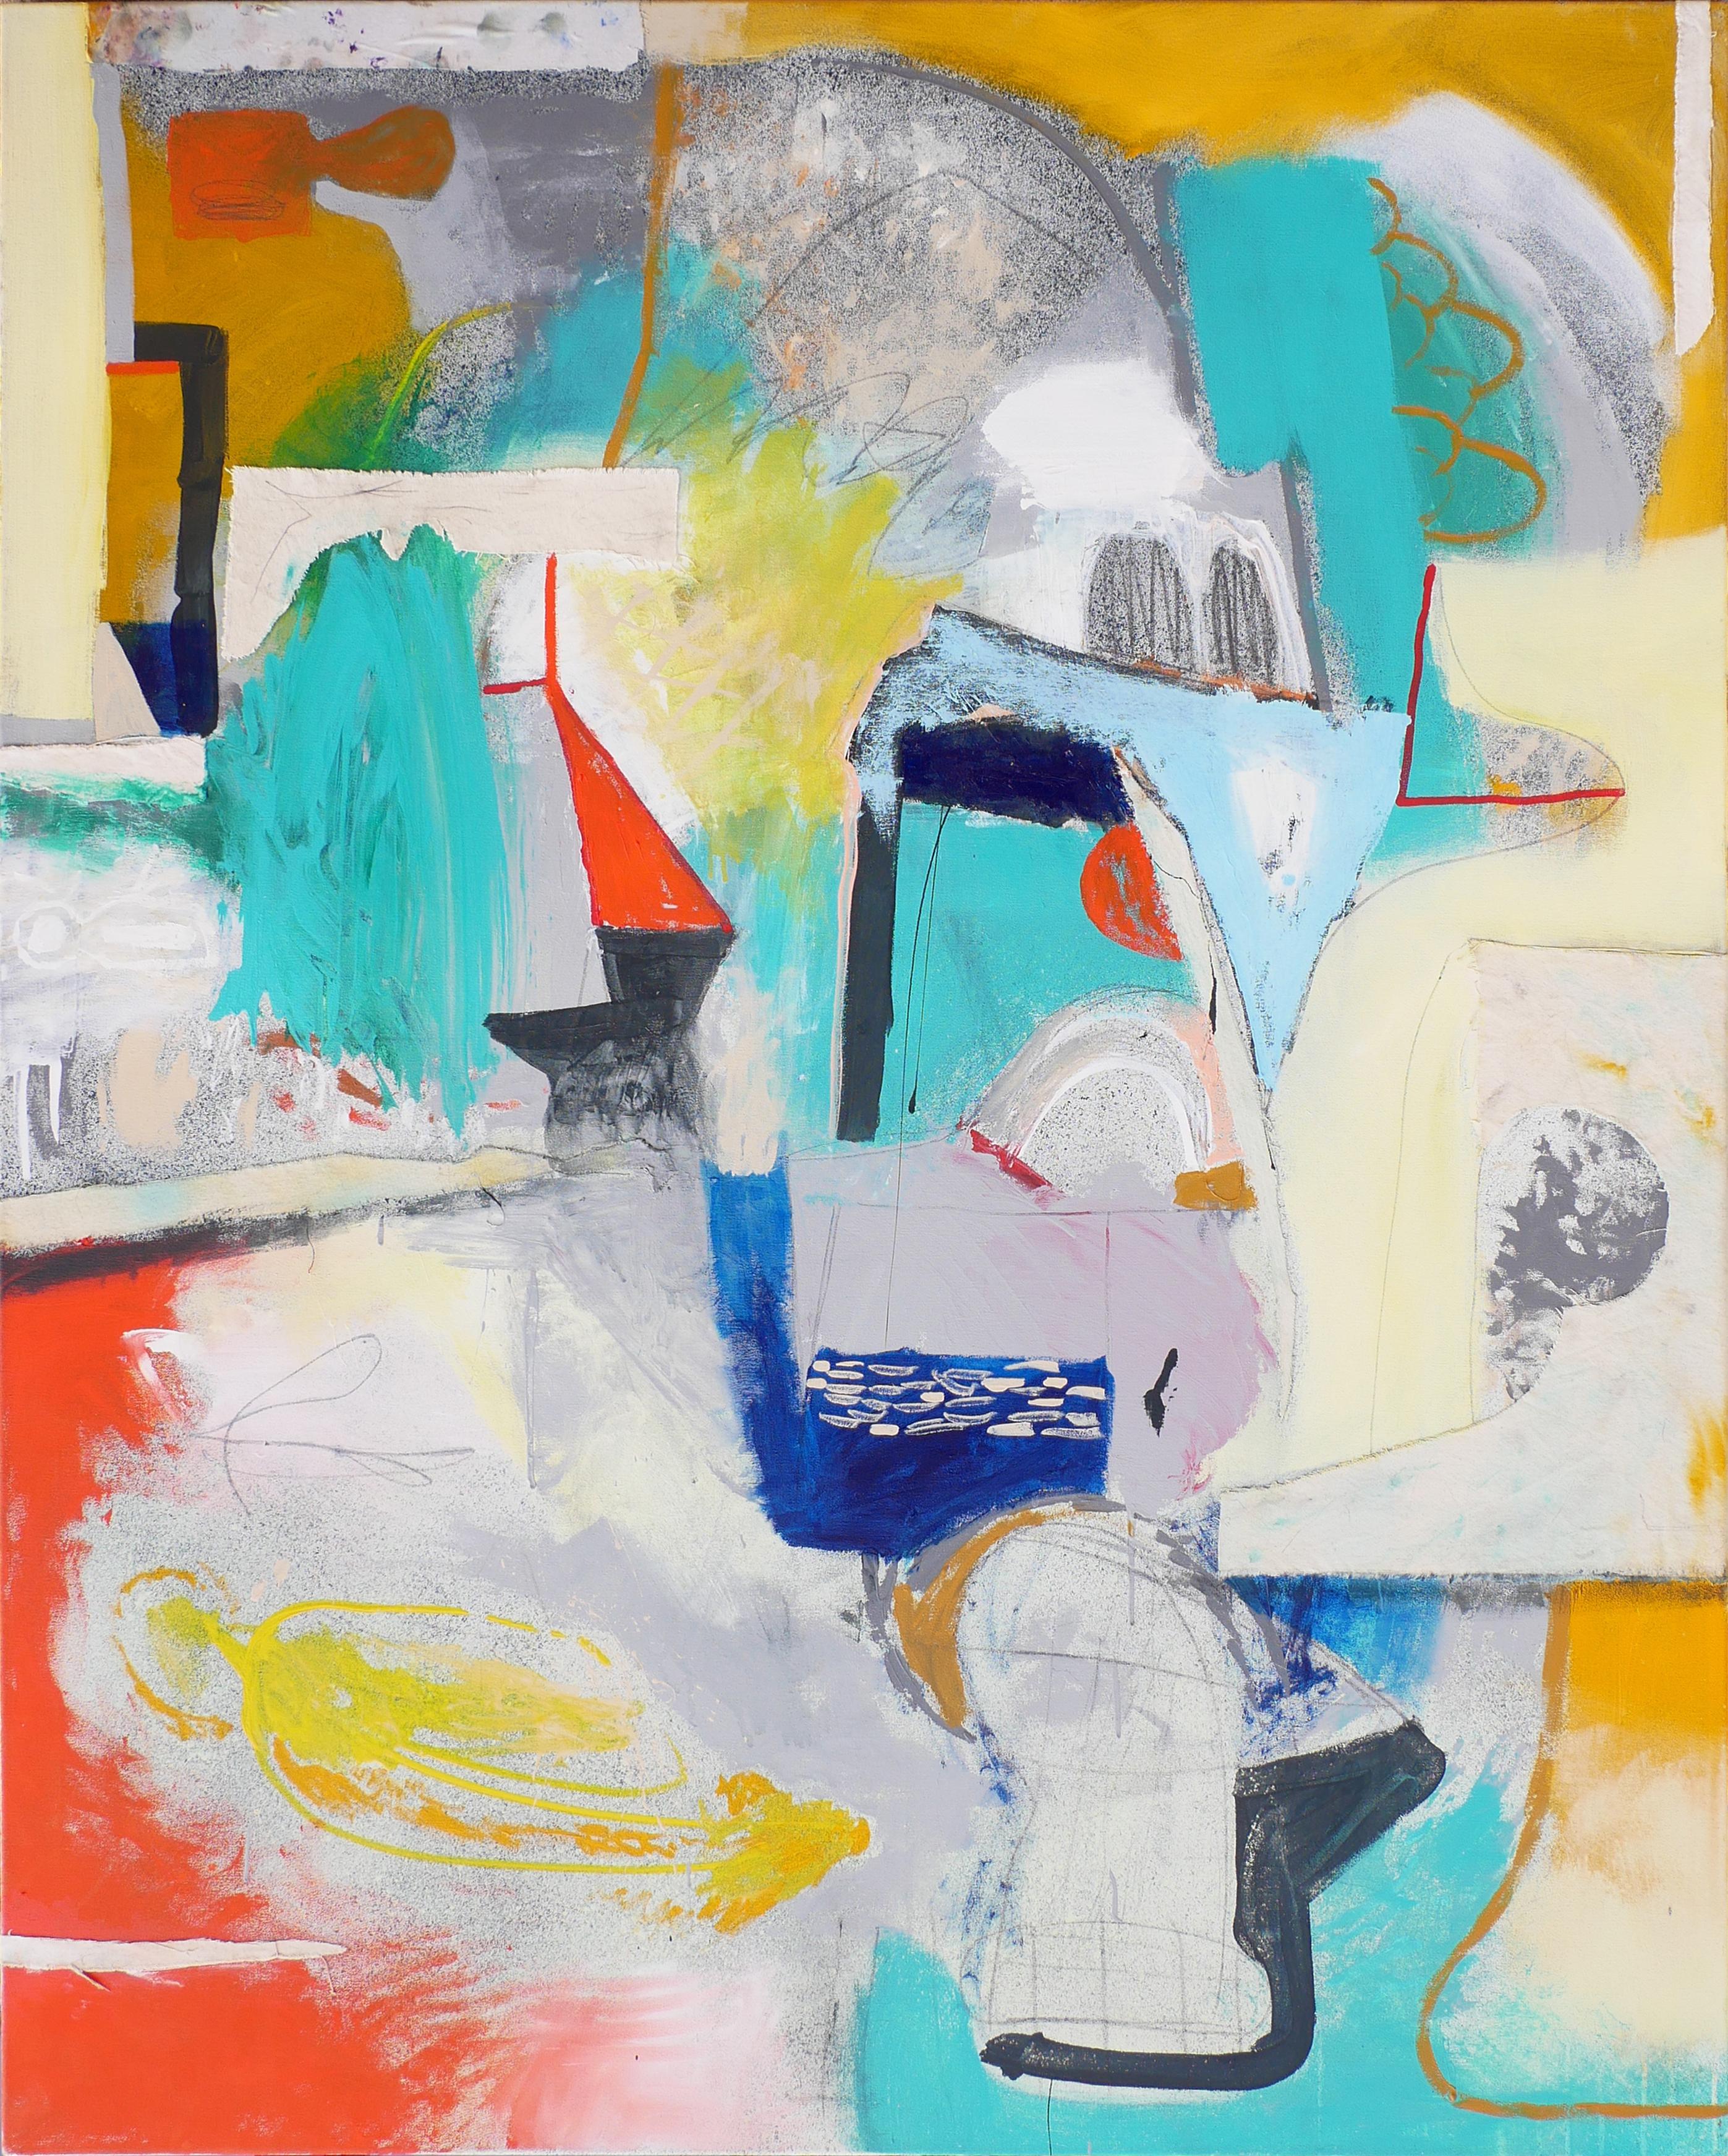 Abstract Painting Peter Healy - Stitching Guesture - Peinture géométrique abstraite contemporaine colorée